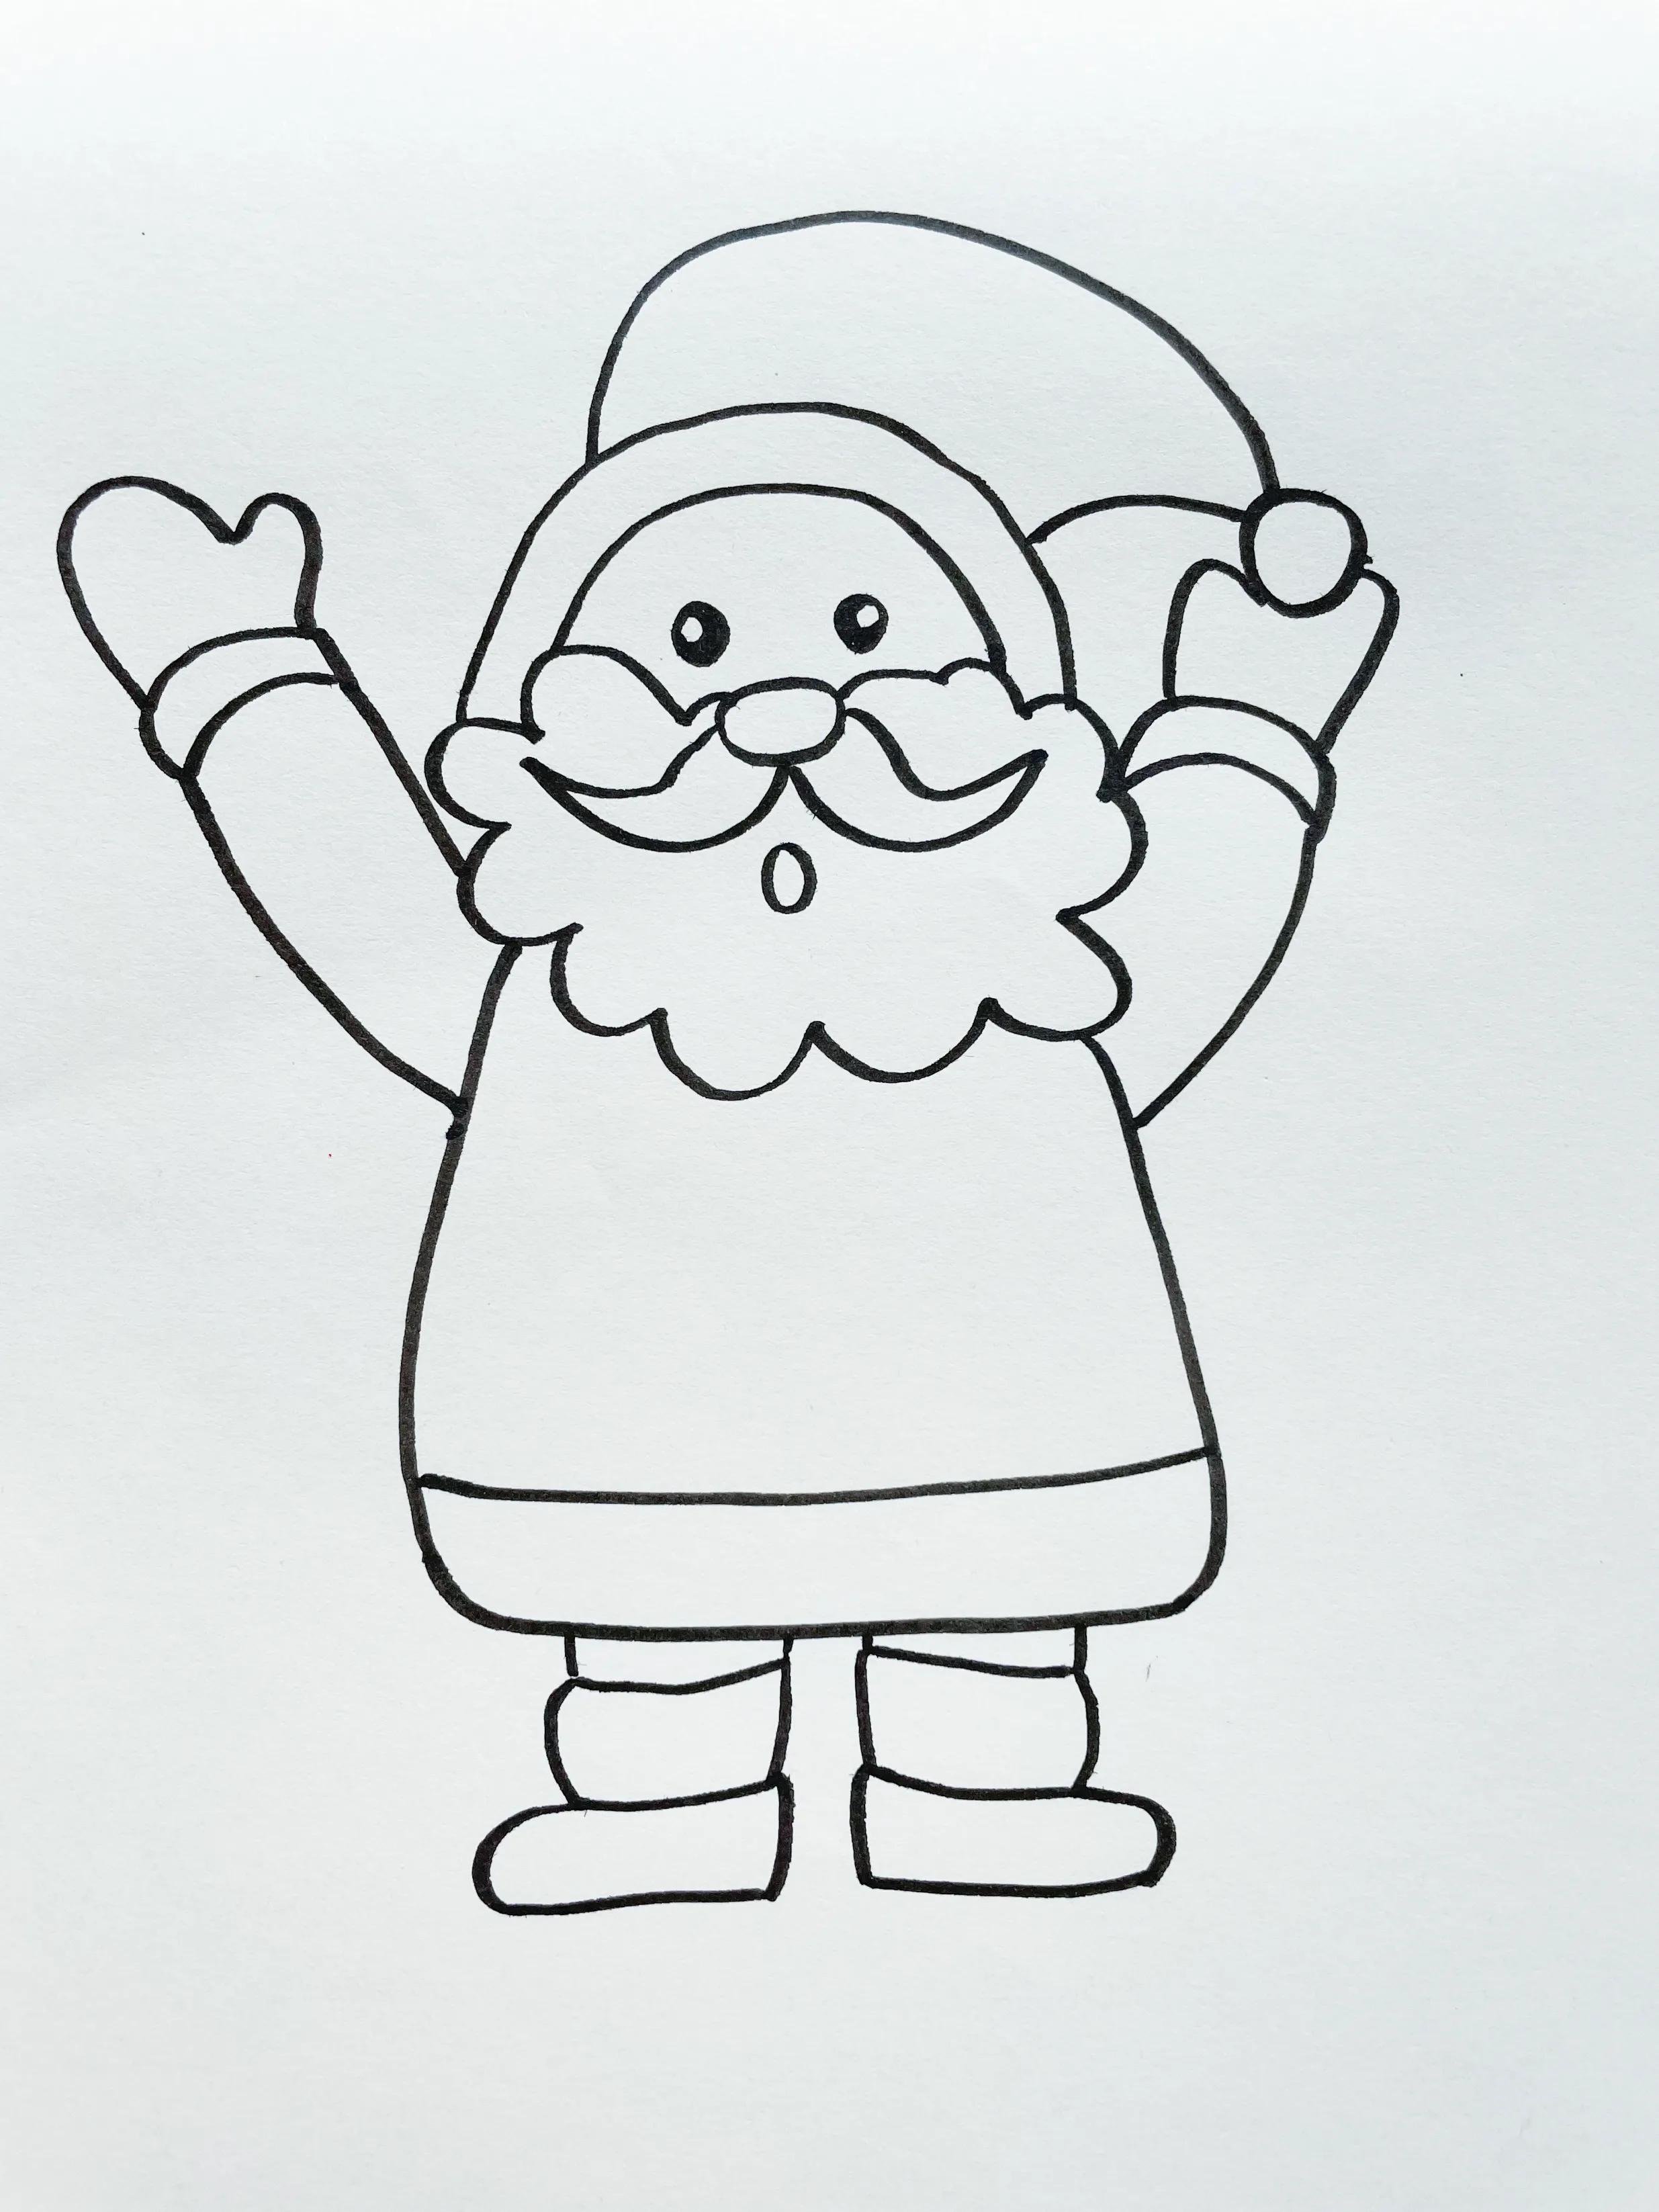 快到要圣诞节了，圣诞老人该怎么画呢？快教给孩子画一个吧